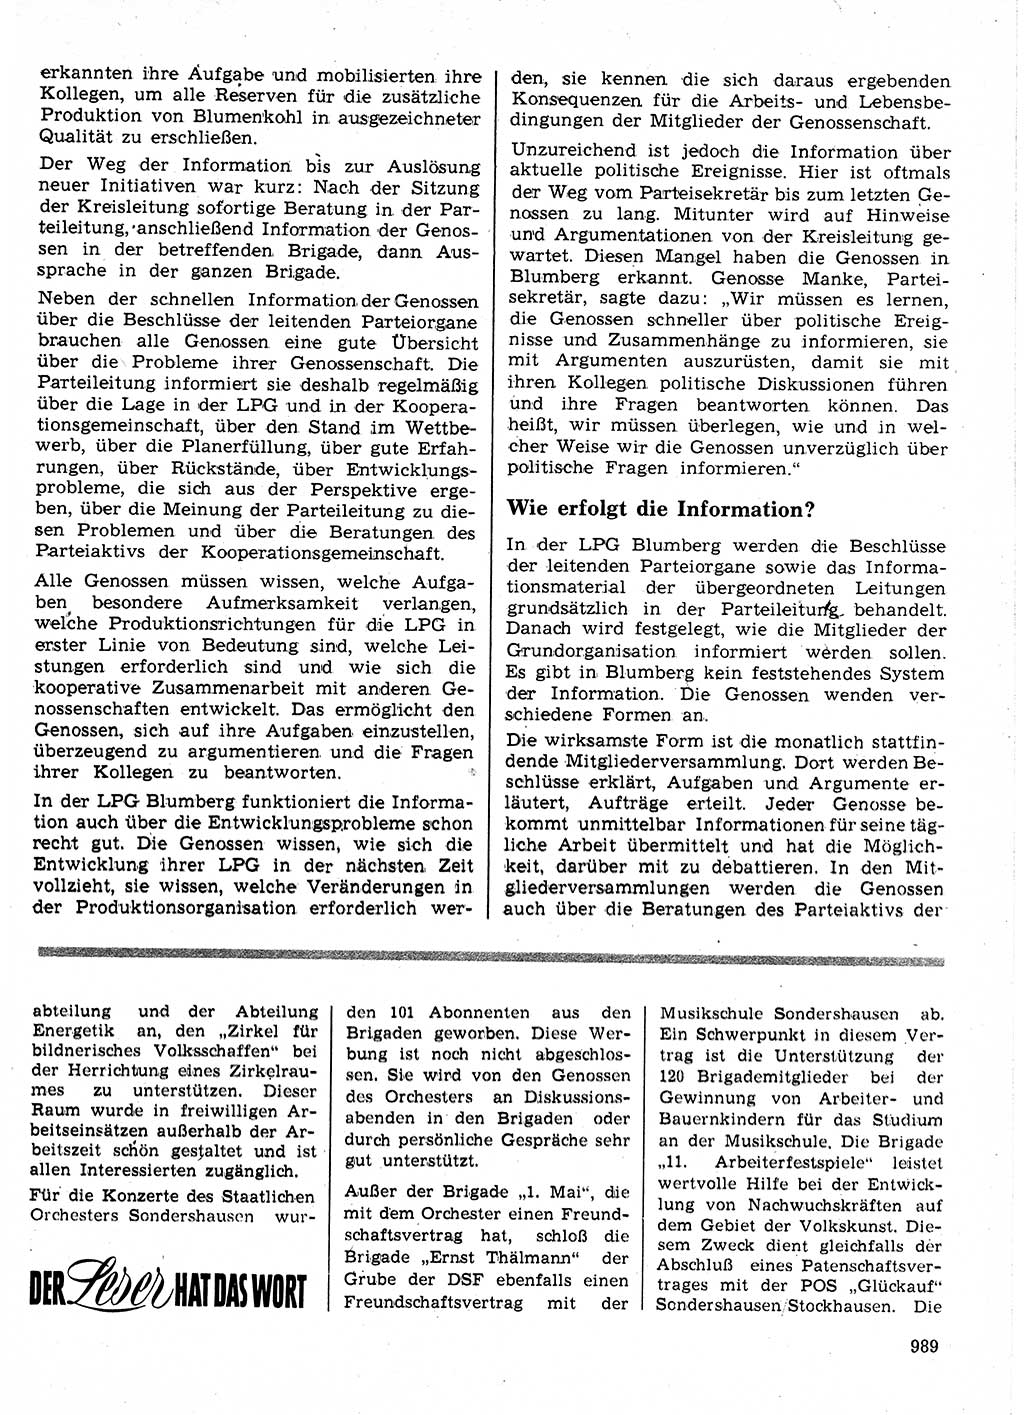 Neuer Weg (NW), Organ des Zentralkomitees (ZK) der SED (Sozialistische Einheitspartei Deutschlands) für Fragen des Parteilebens, 24. Jahrgang [Deutsche Demokratische Republik (DDR)] 1969, Seite 989 (NW ZK SED DDR 1969, S. 989)